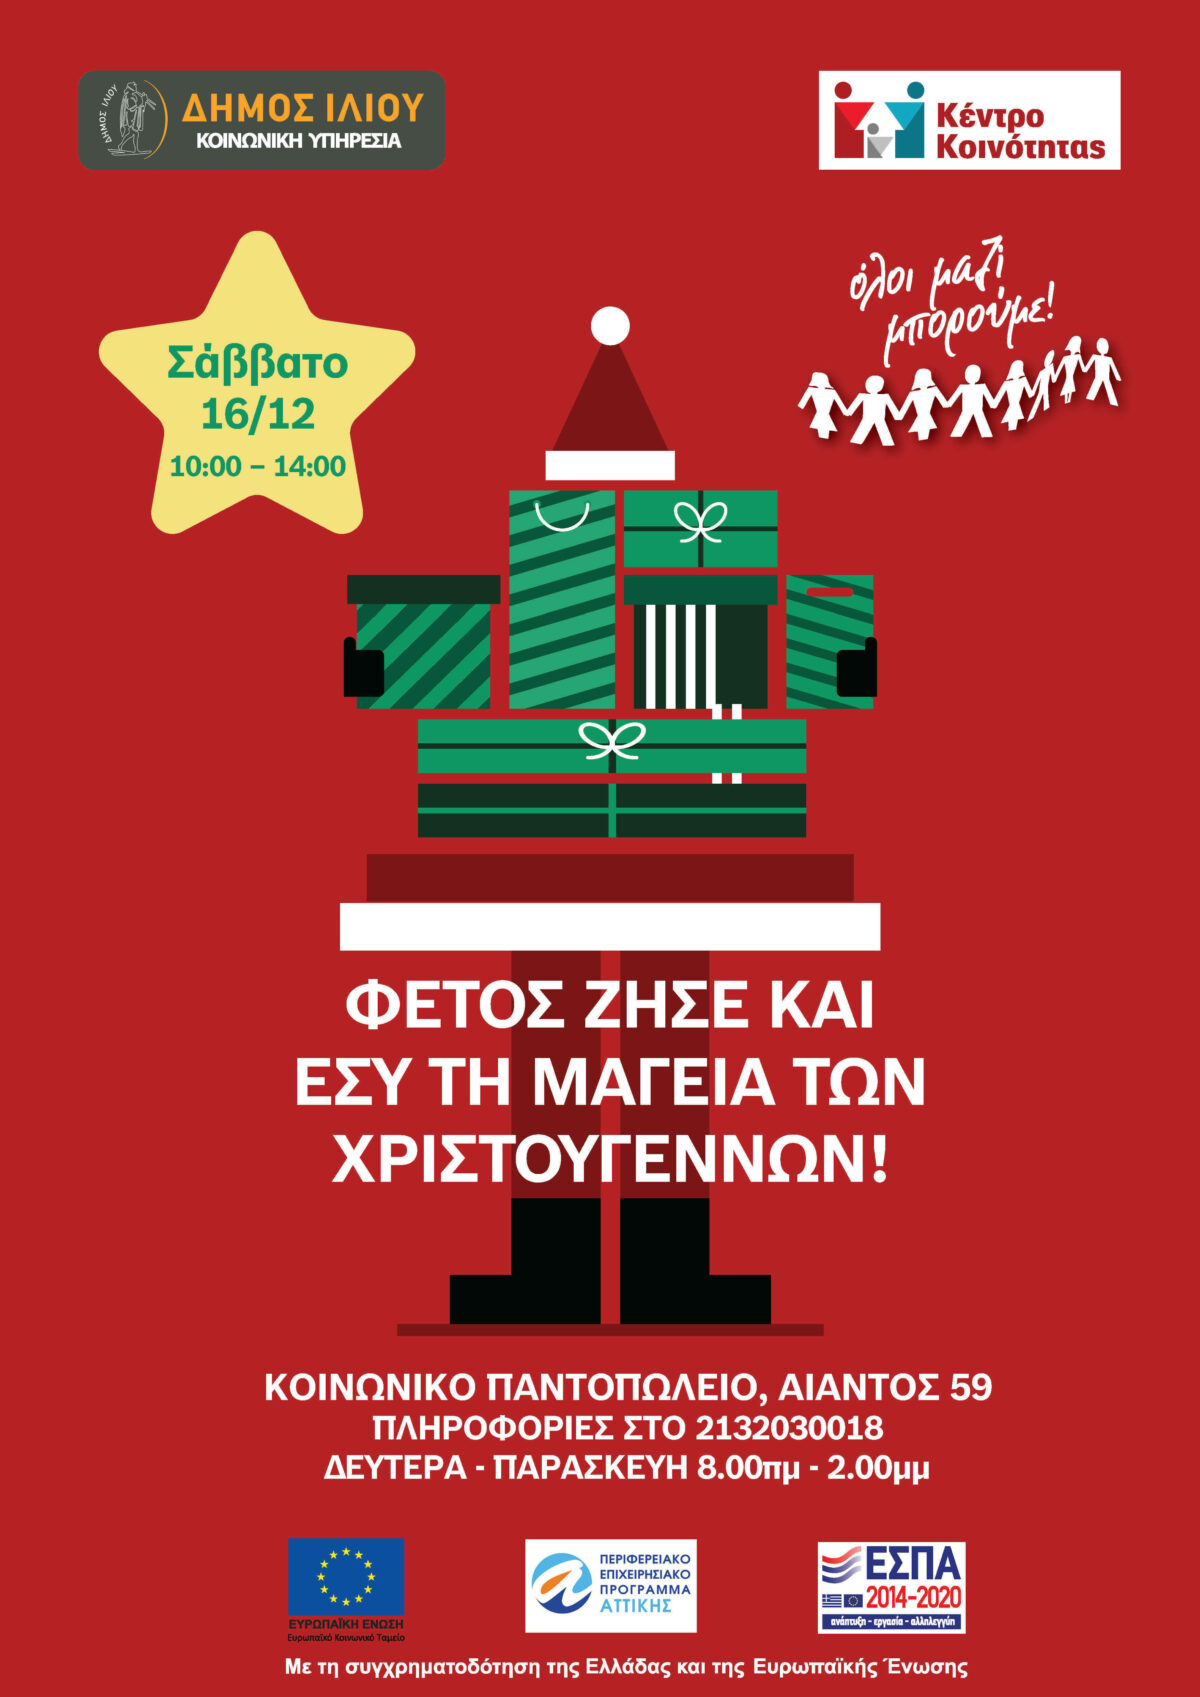 Δήμος Ιλίου: Συγκεντρώνουμε Χριστουγεννιάτικα δώρα, για τα παιδιά που περιμένουν